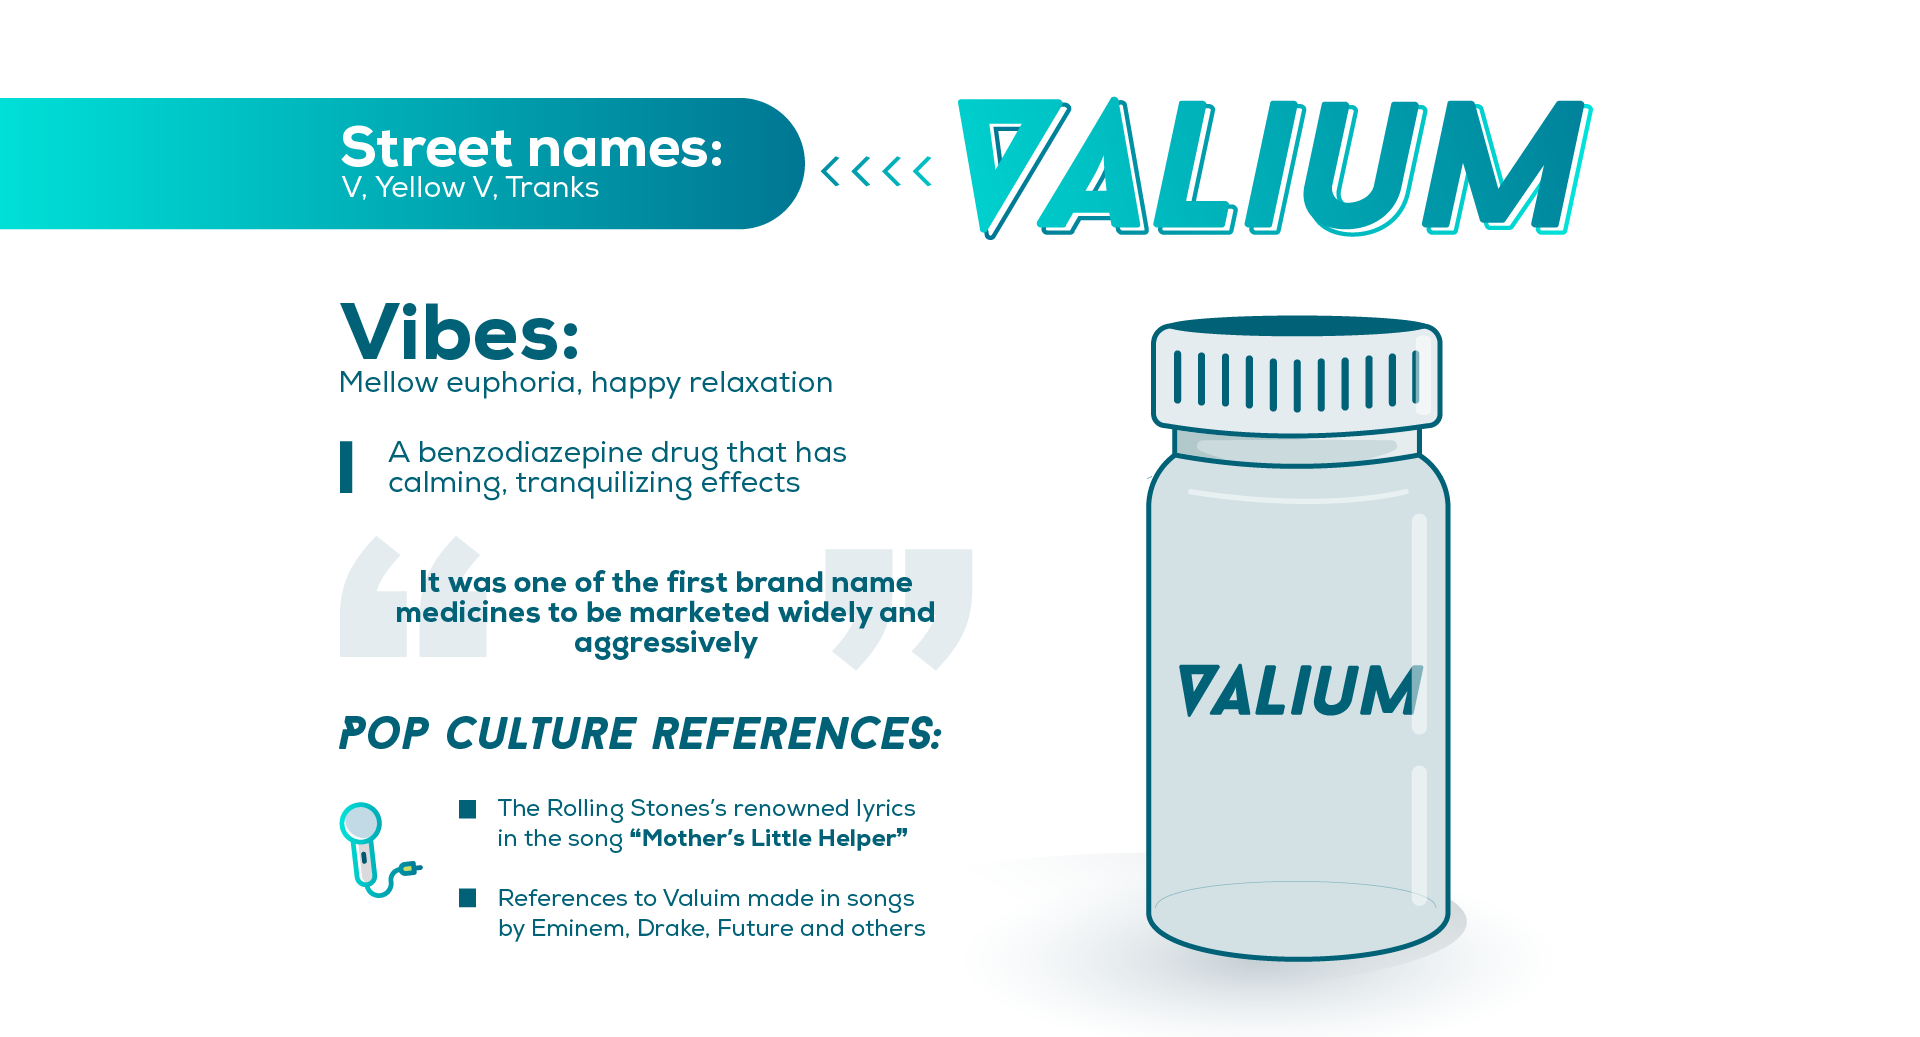 Valium in Popular Culture